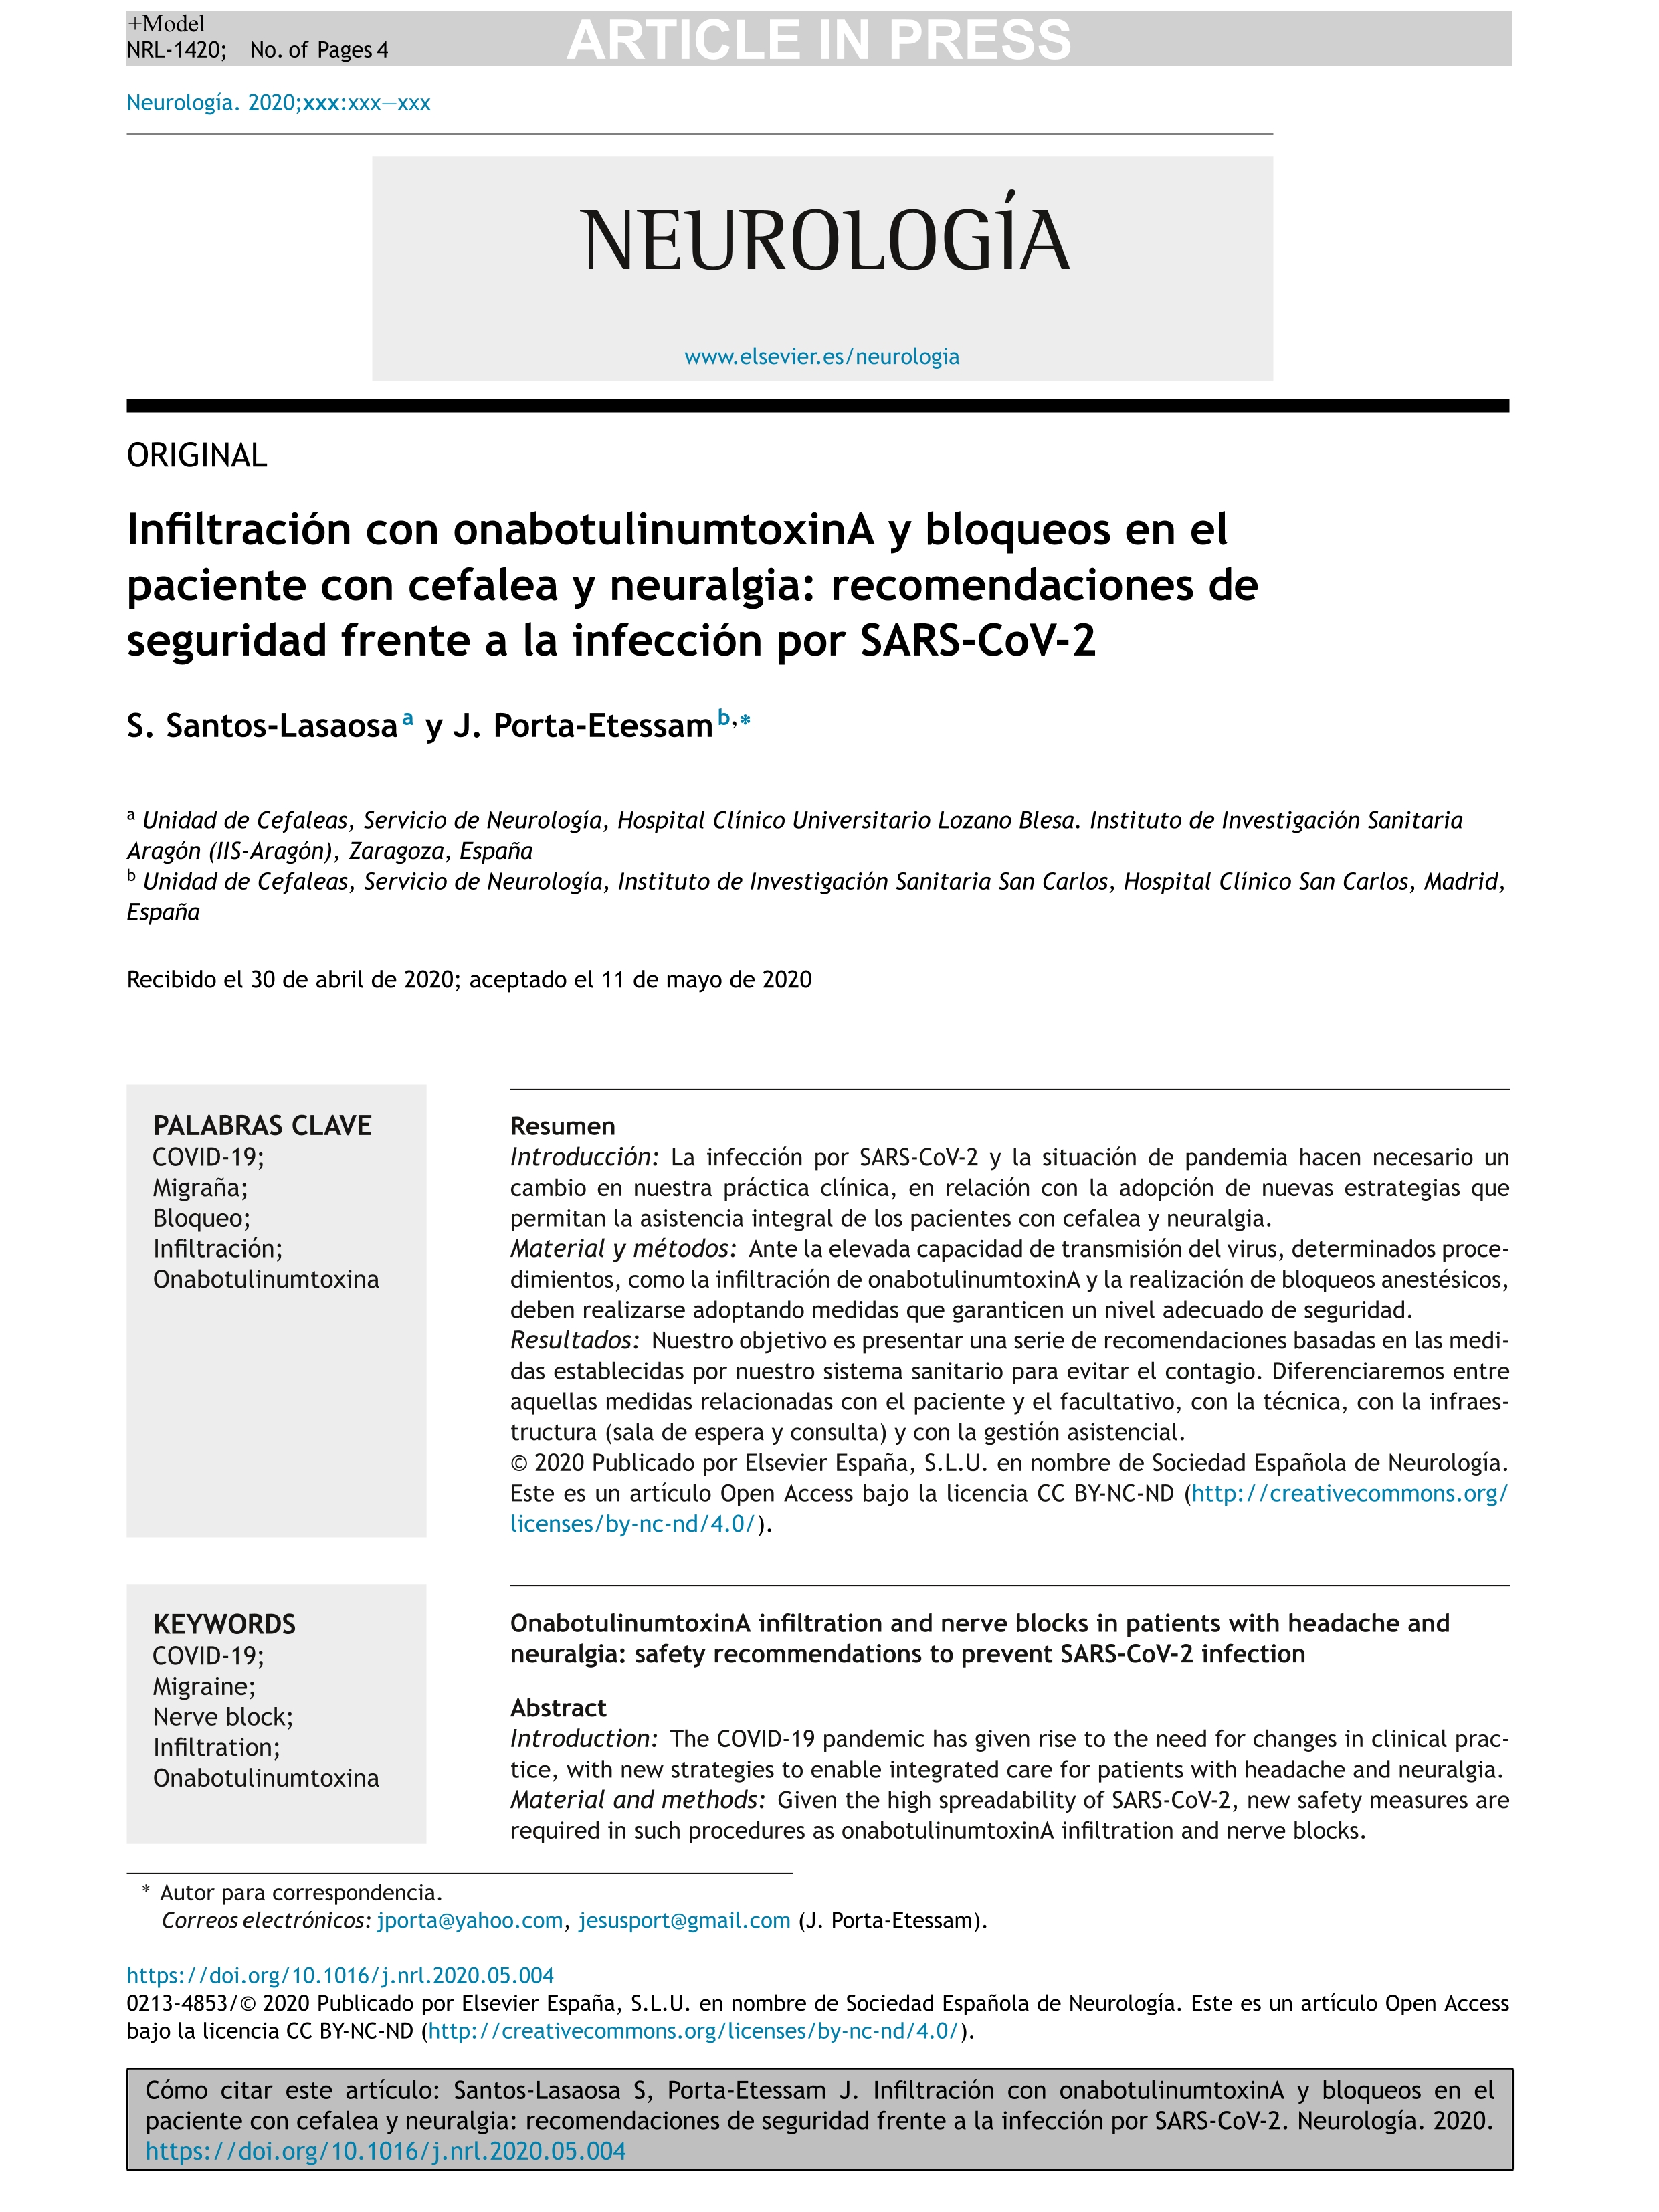 Infiltración con onabotulinumtoxinA y bloqueos en el paciente con cefalea y neuralgia: recomendaciones de seguridad frente a la infección por SARS-CoV-2